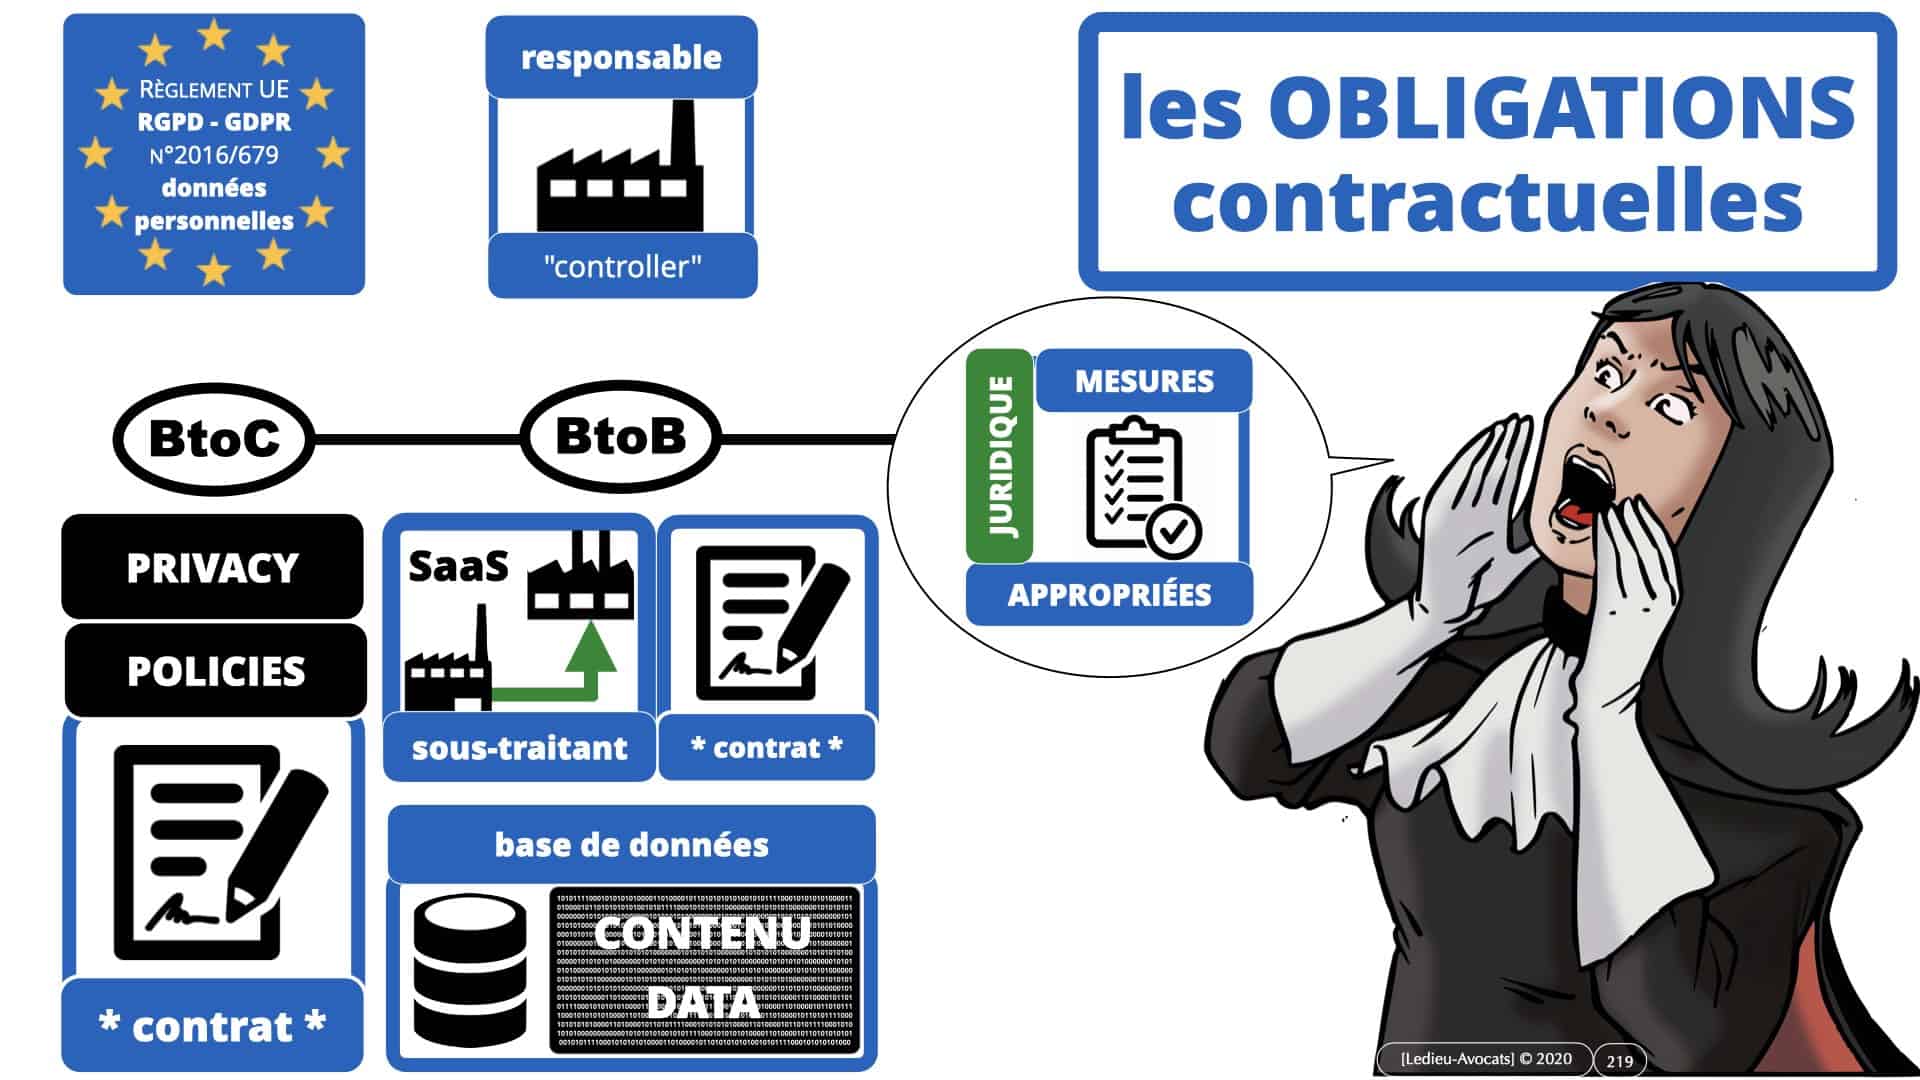 RGPD e-Privacy données personnelles jurisprudence formation Lamy Les Echos 10-02-2021 ©Ledieu-Avocats.219